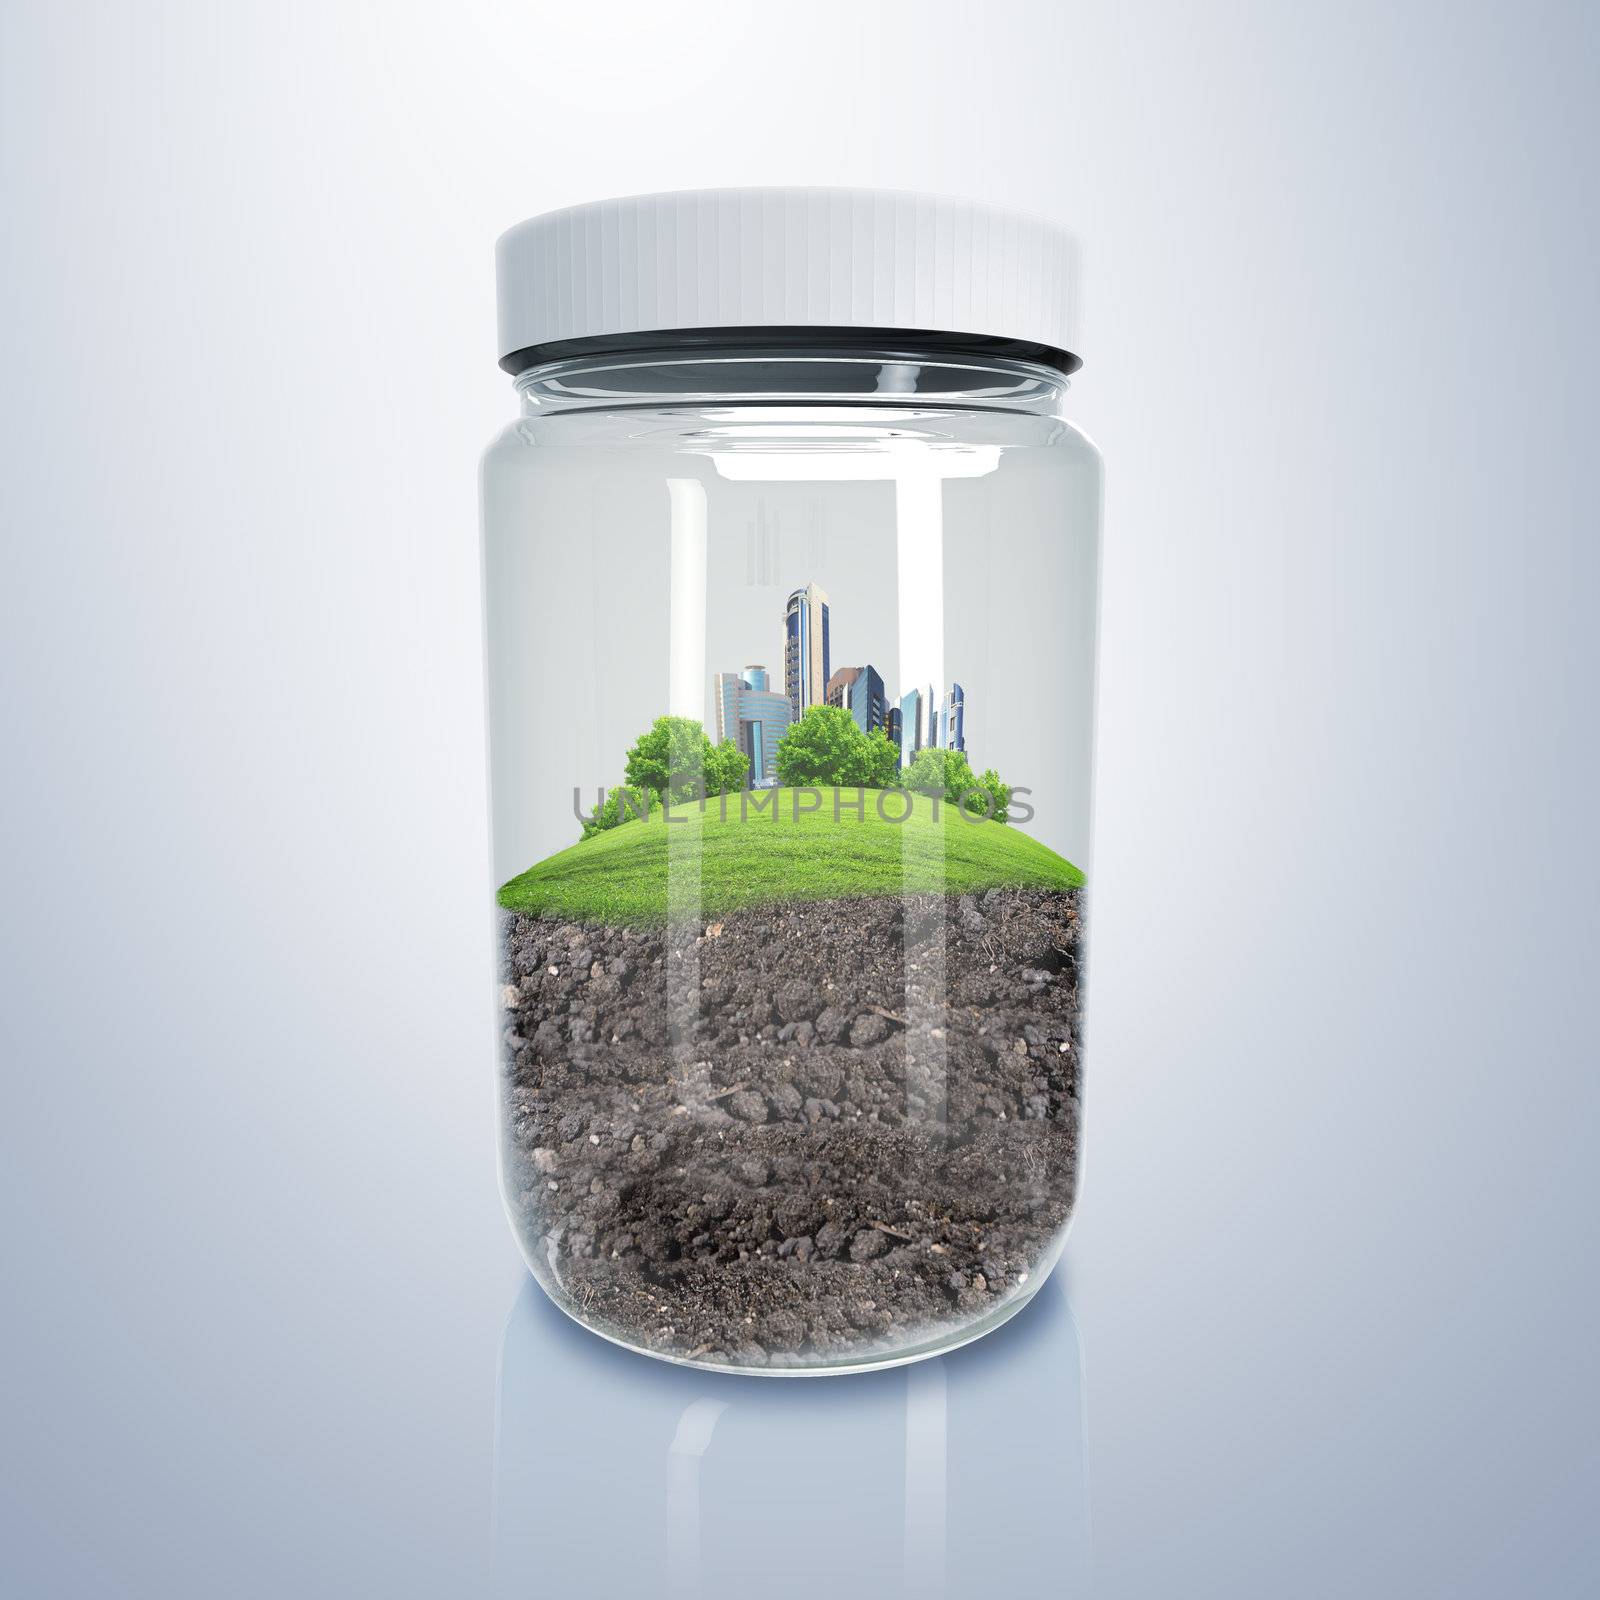 City inside a glass jar by sergey_nivens